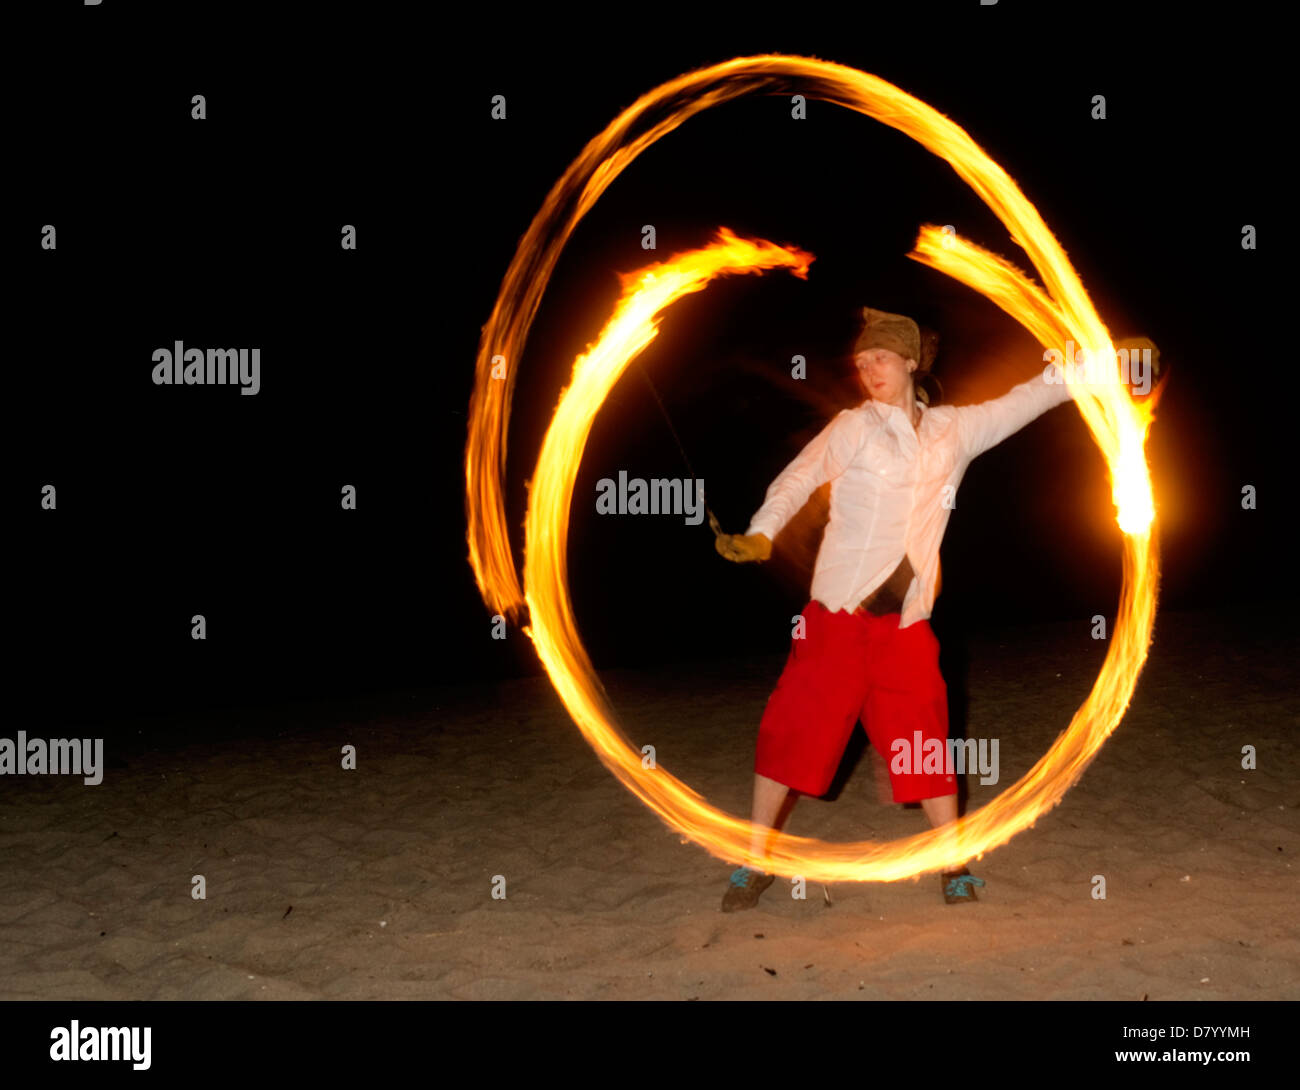 Un uomo festeggia il nuovo anno il suo modo accogliendo nuove sfide ballando e giocando con il fuoco la filatura Foto Stock